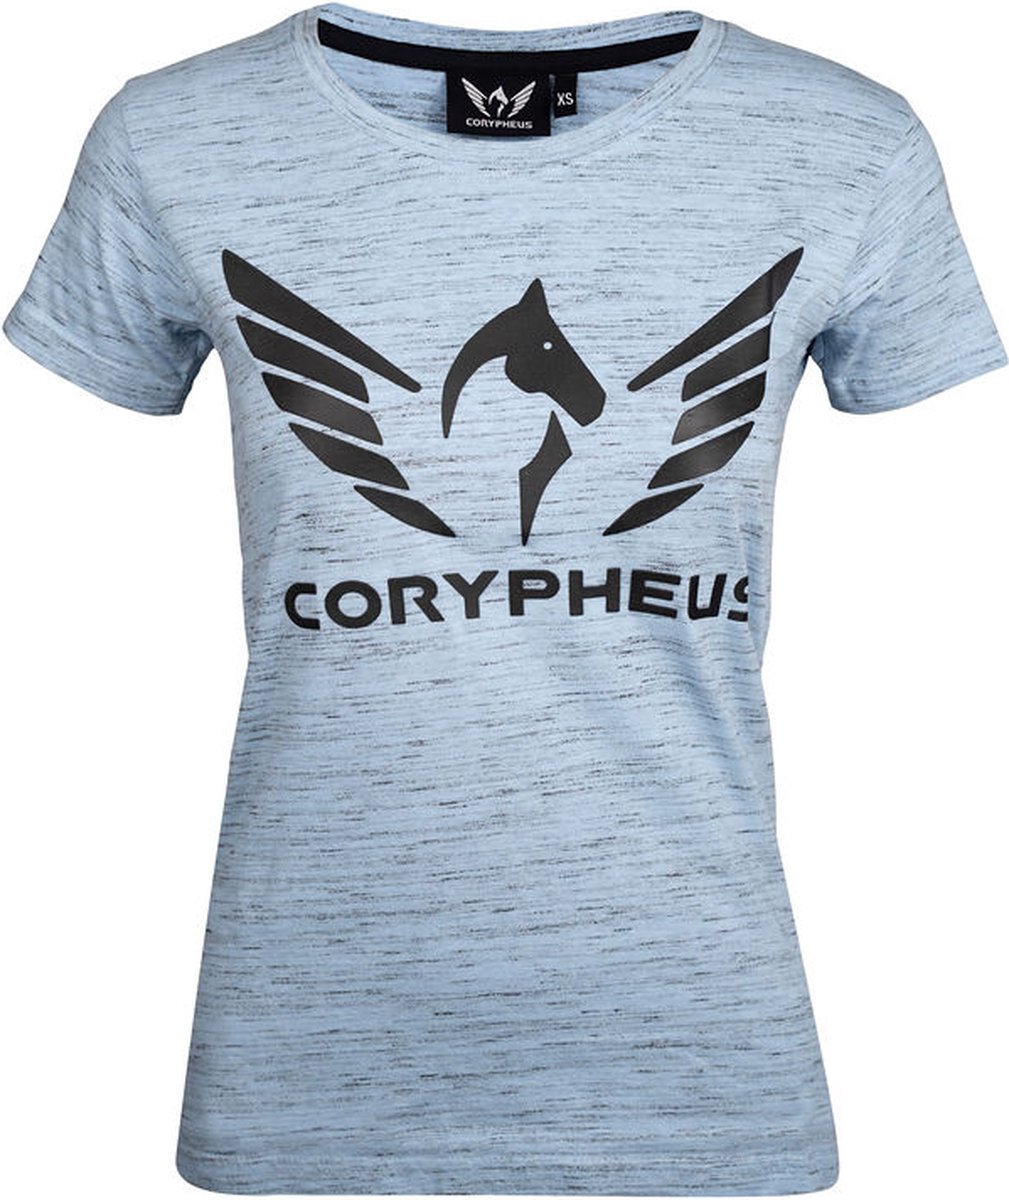 Corypheus Skyway Women's T-Shirt - Large